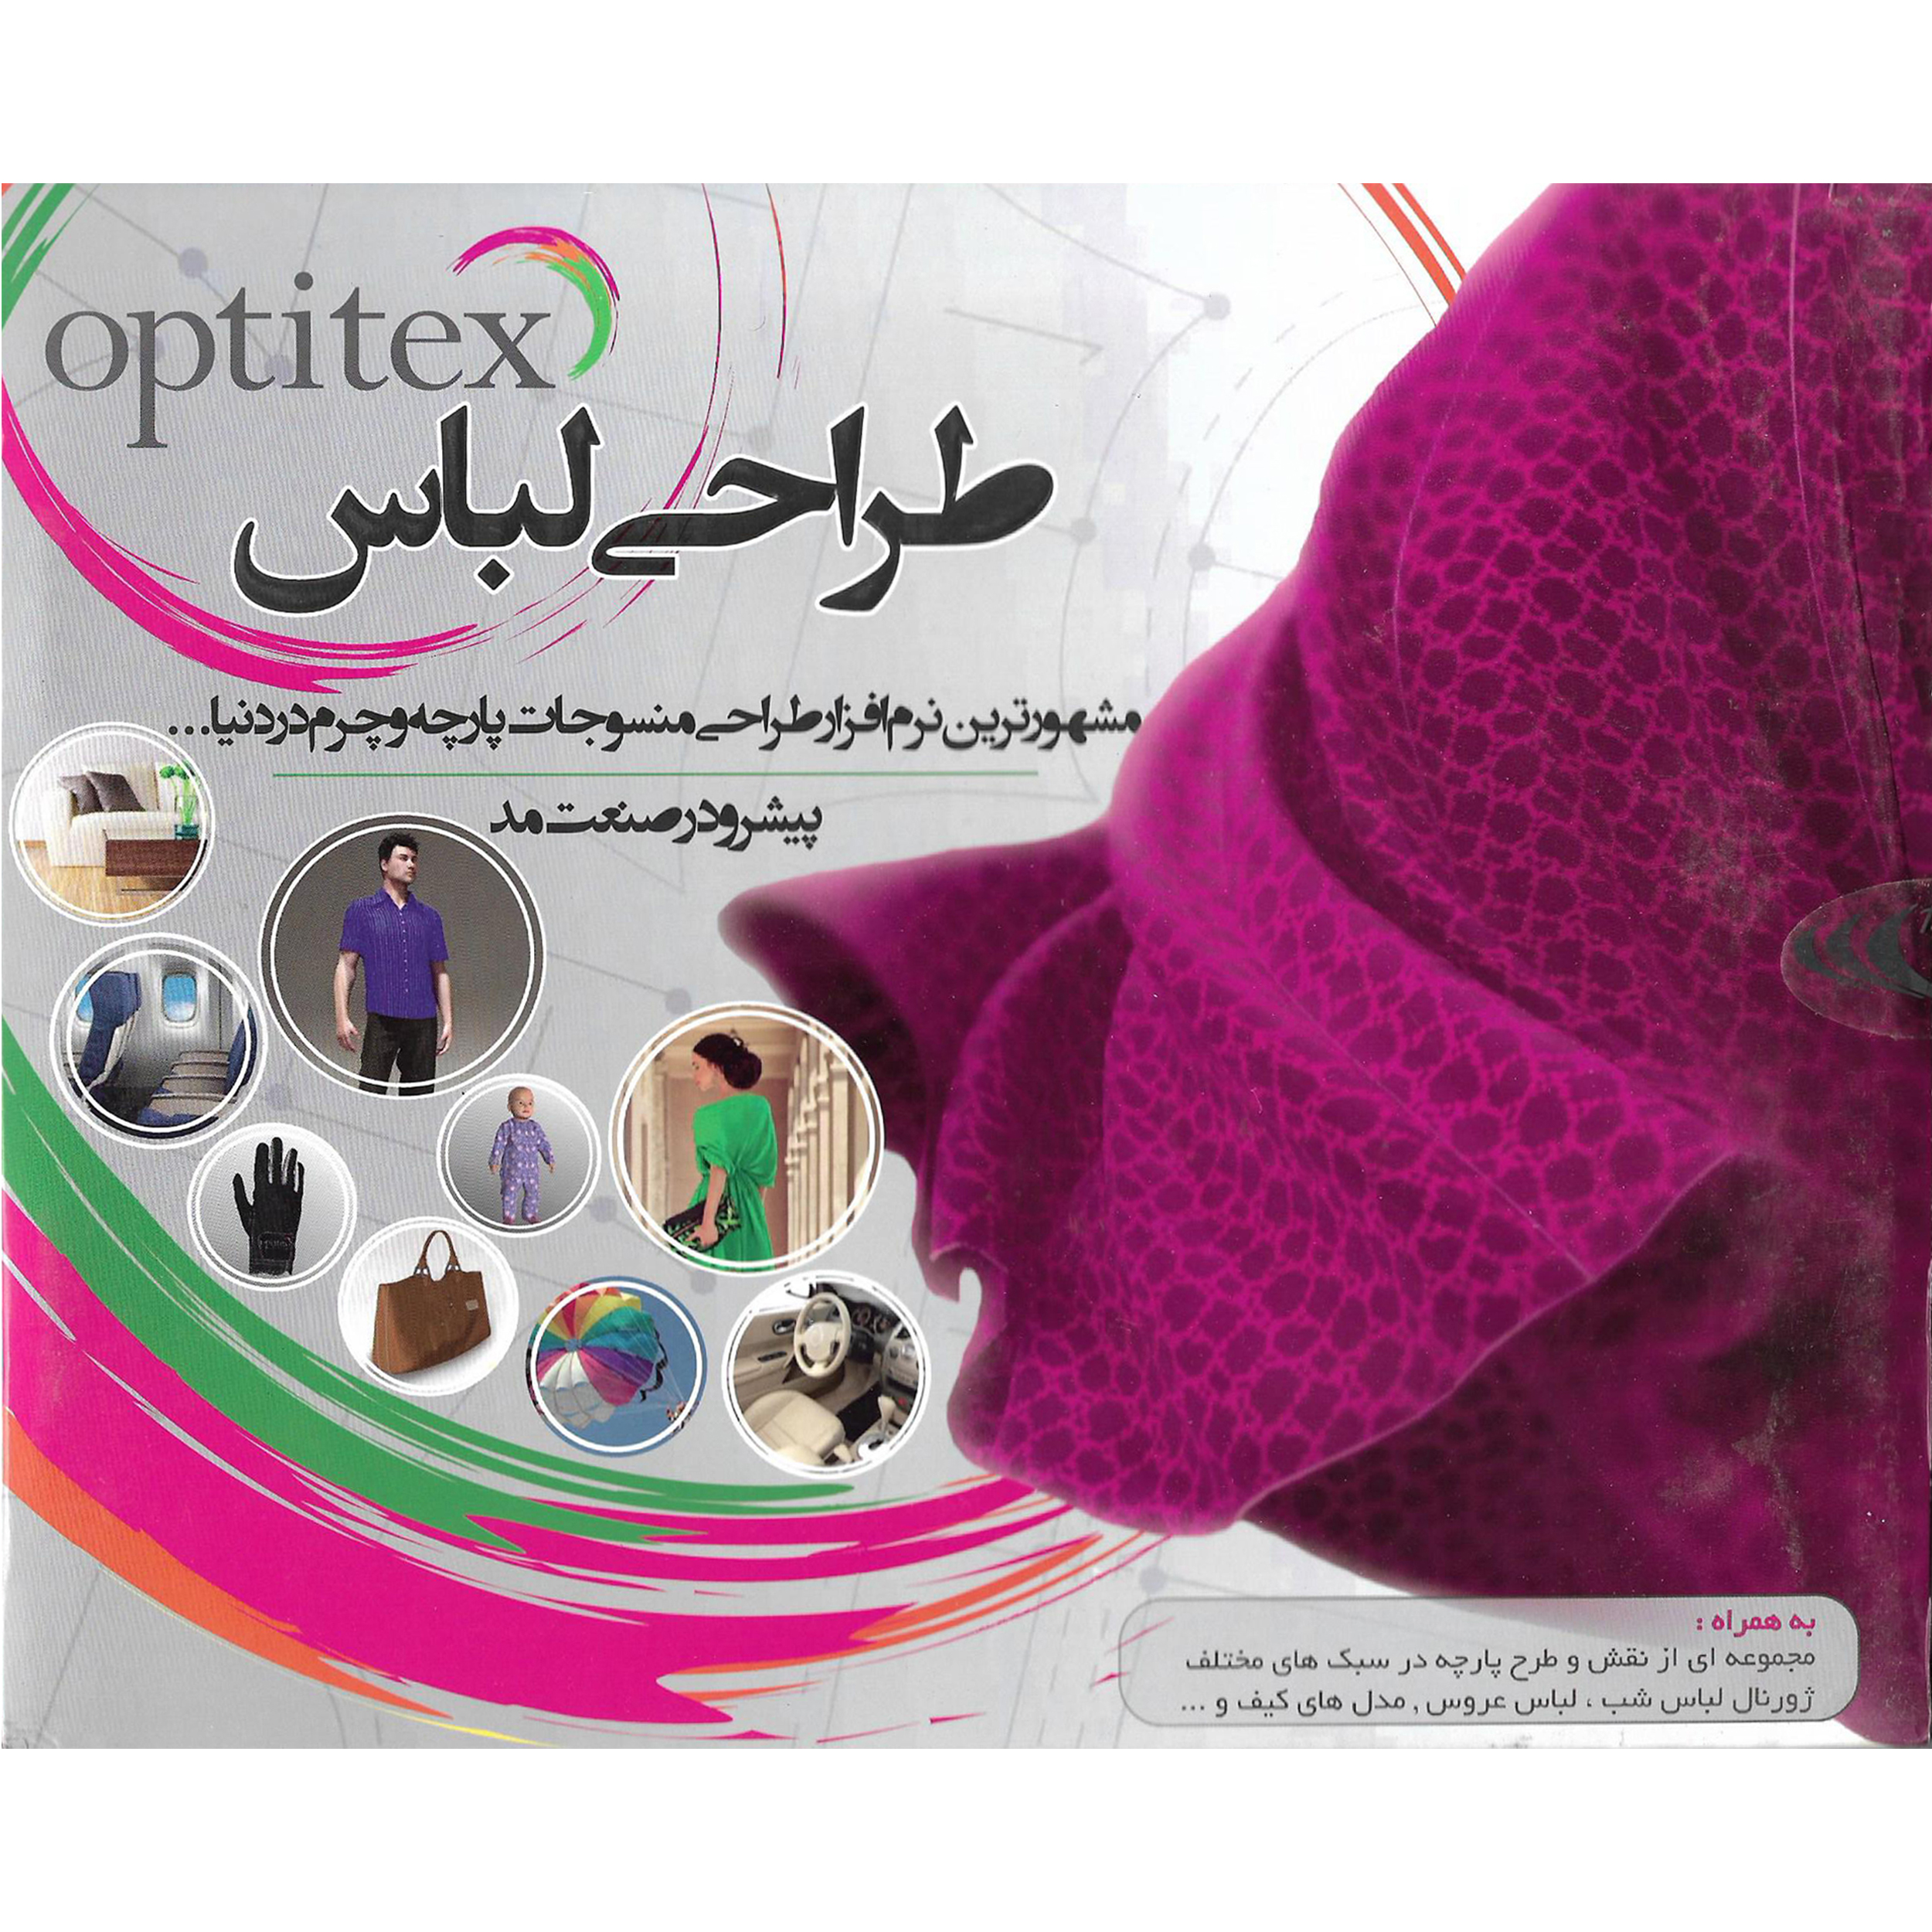 نرم افزار طراحی لباس OPTITEX نشر آویژه